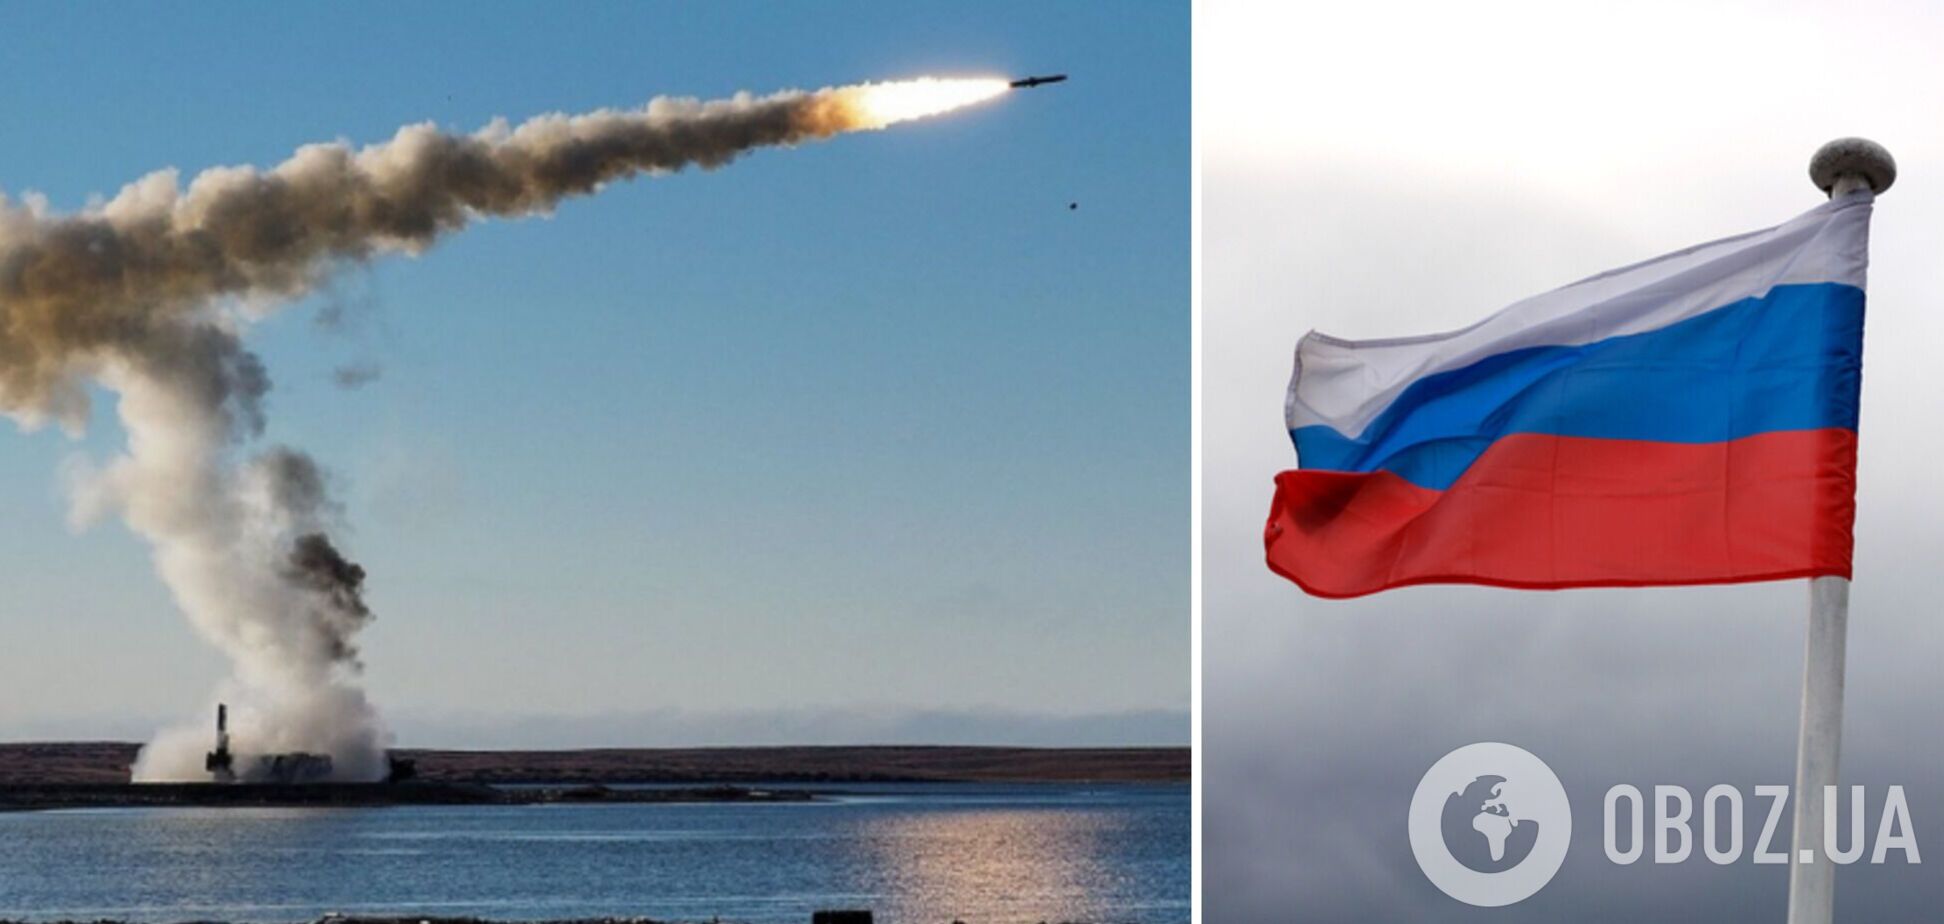 Западные компании  до сих пор производят для России чипы, помогающие нацеливать на Украину ракеты